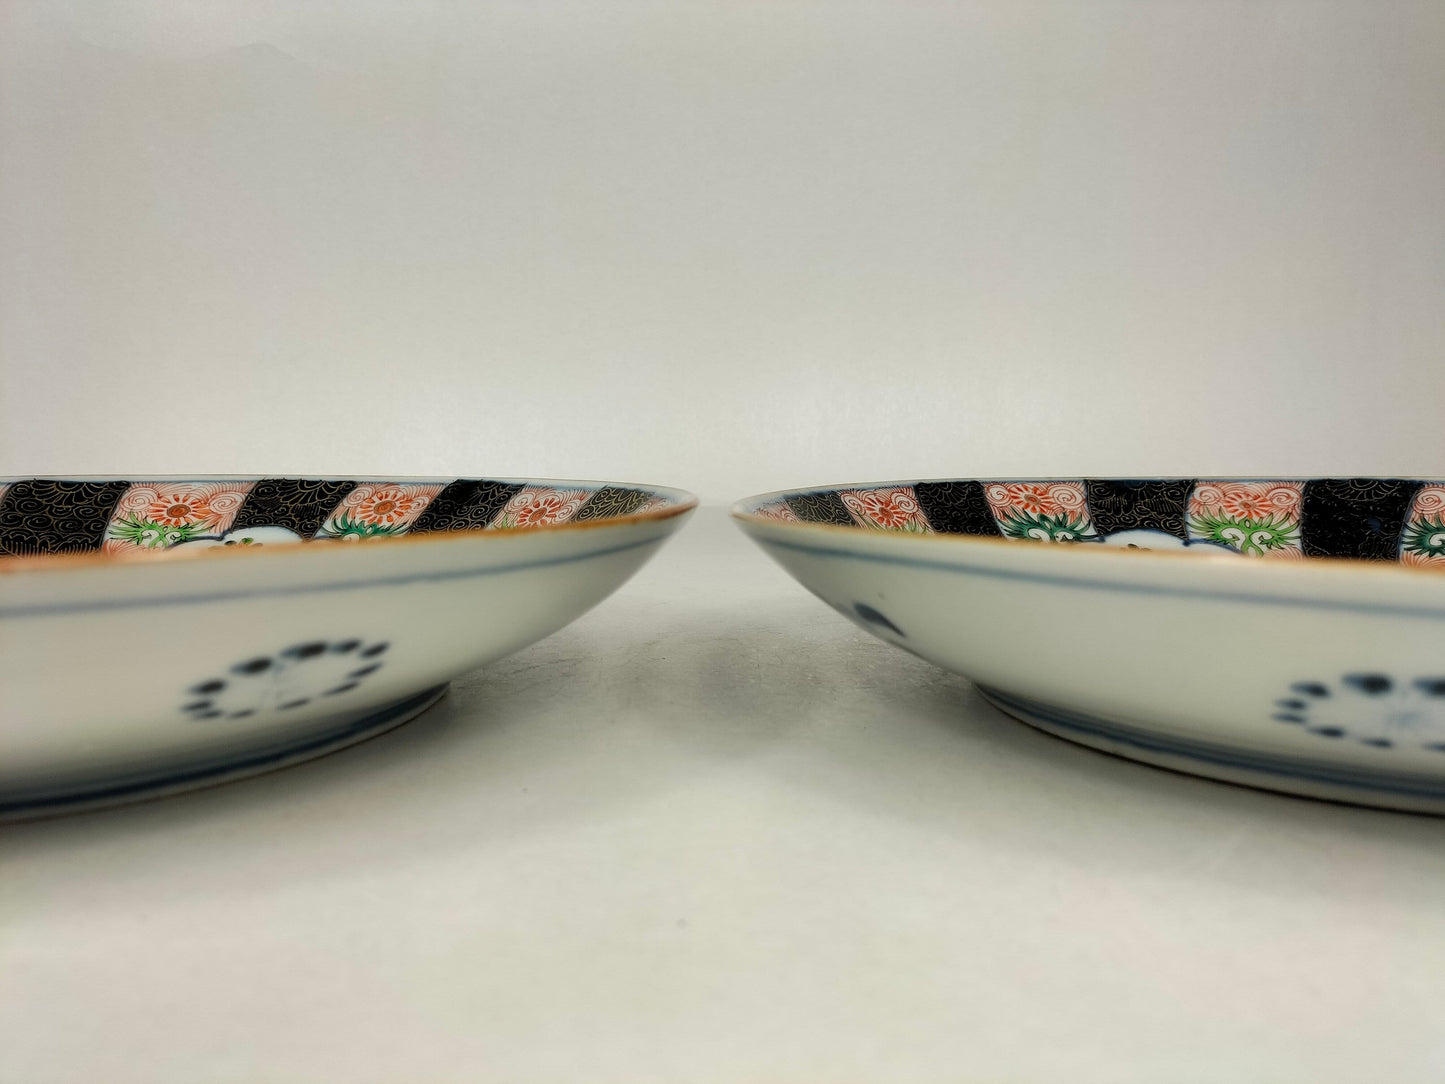 Pair of large antique Japanese imari plates // Meiji Period - 19th century